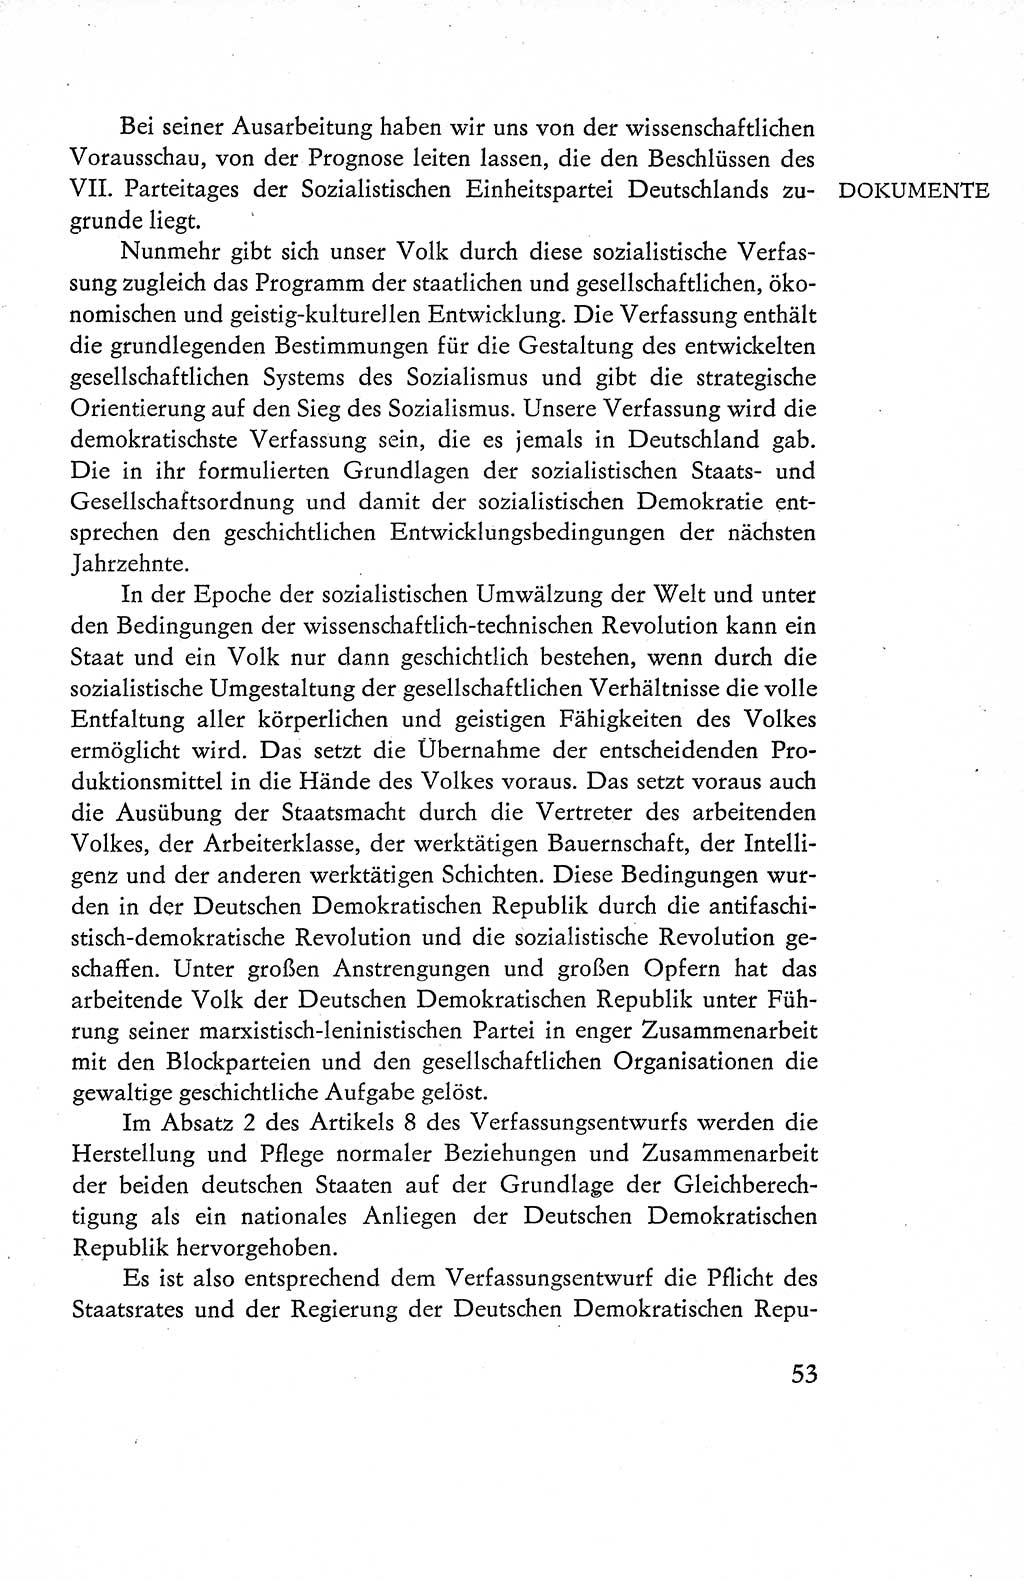 Verfassung der Deutschen Demokratischen Republik (DDR), Dokumente, Kommentar 1969, Band 1, Seite 53 (Verf. DDR Dok. Komm. 1969, Bd. 1, S. 53)